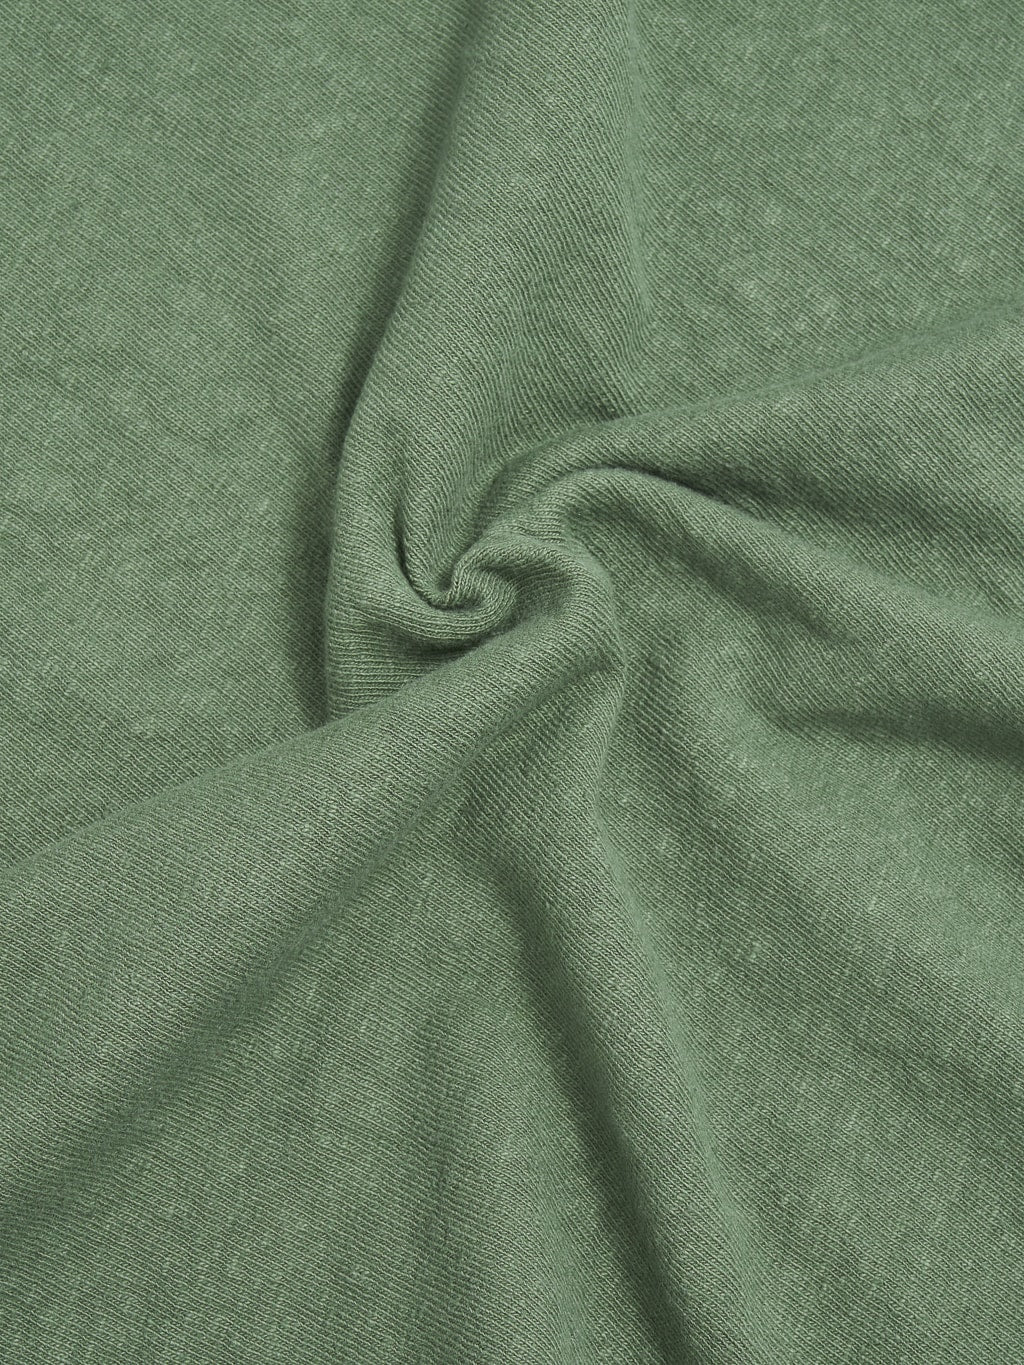 Ues slub nep short sleeve tshirt green heavy cotton